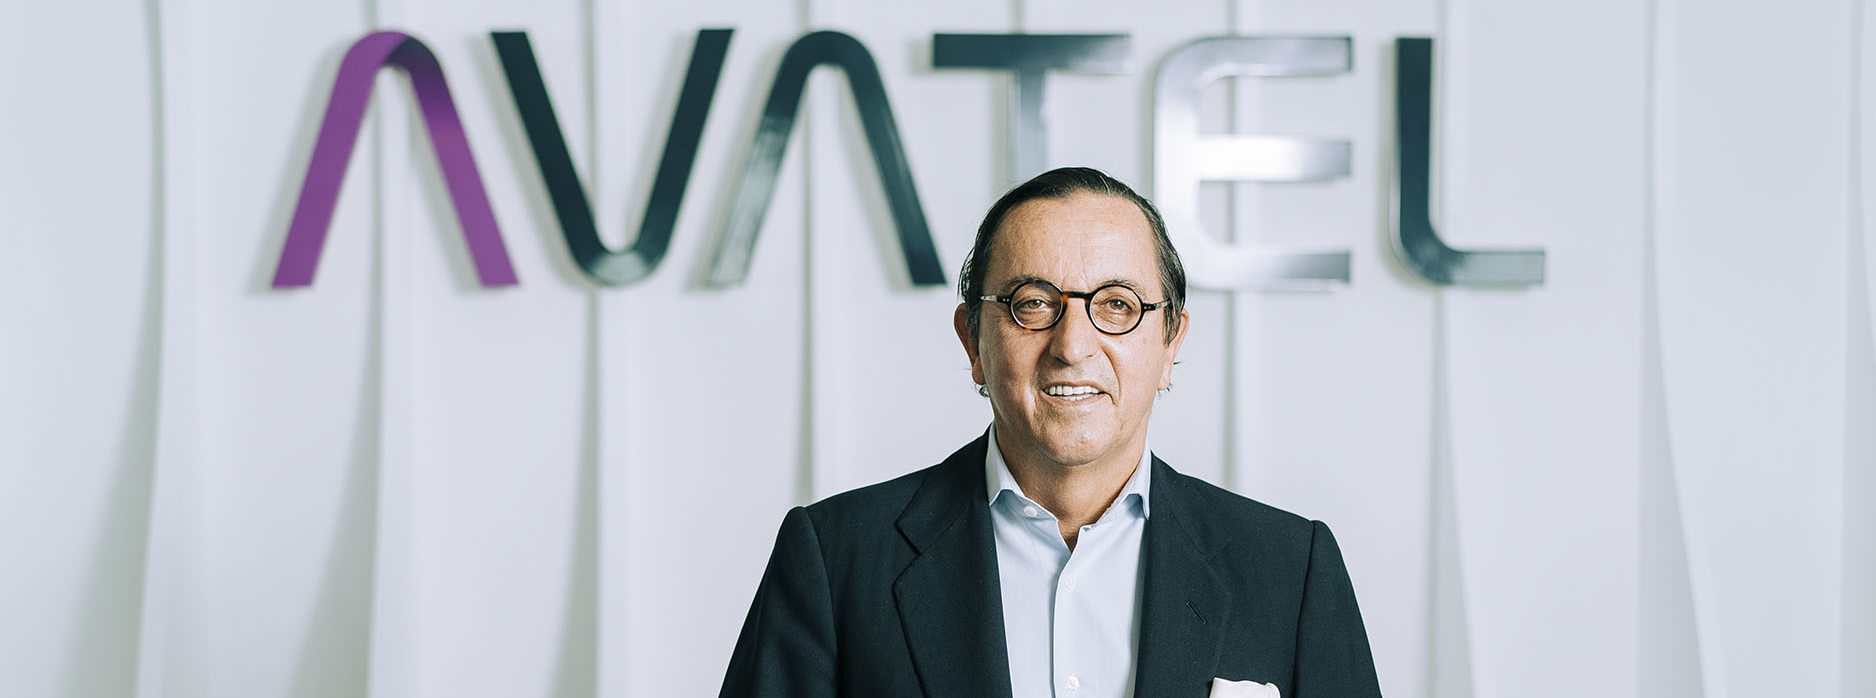 José María del Corro, nombrado CFO de Avatel